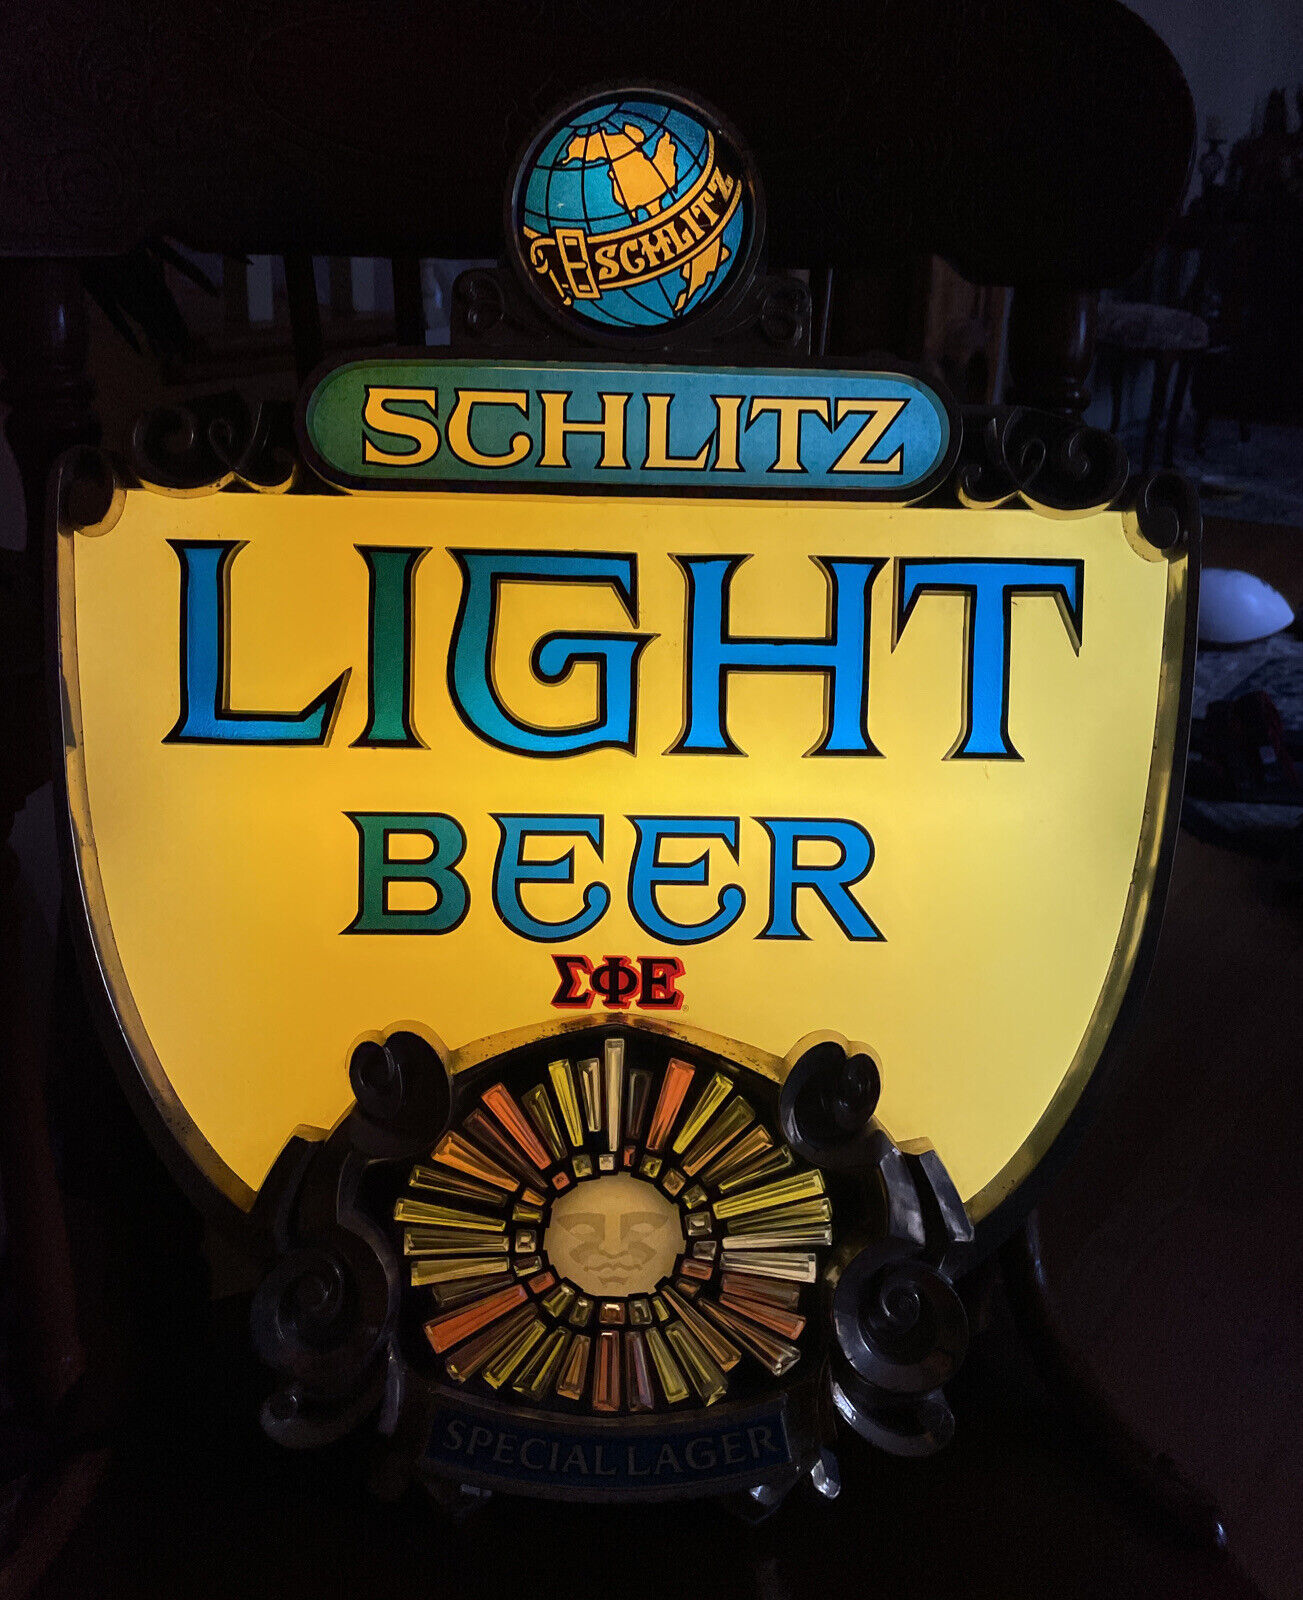 1967 Vintage Schlitz Beer Motion Bar Fireworks Sign Light Up Display Advertising